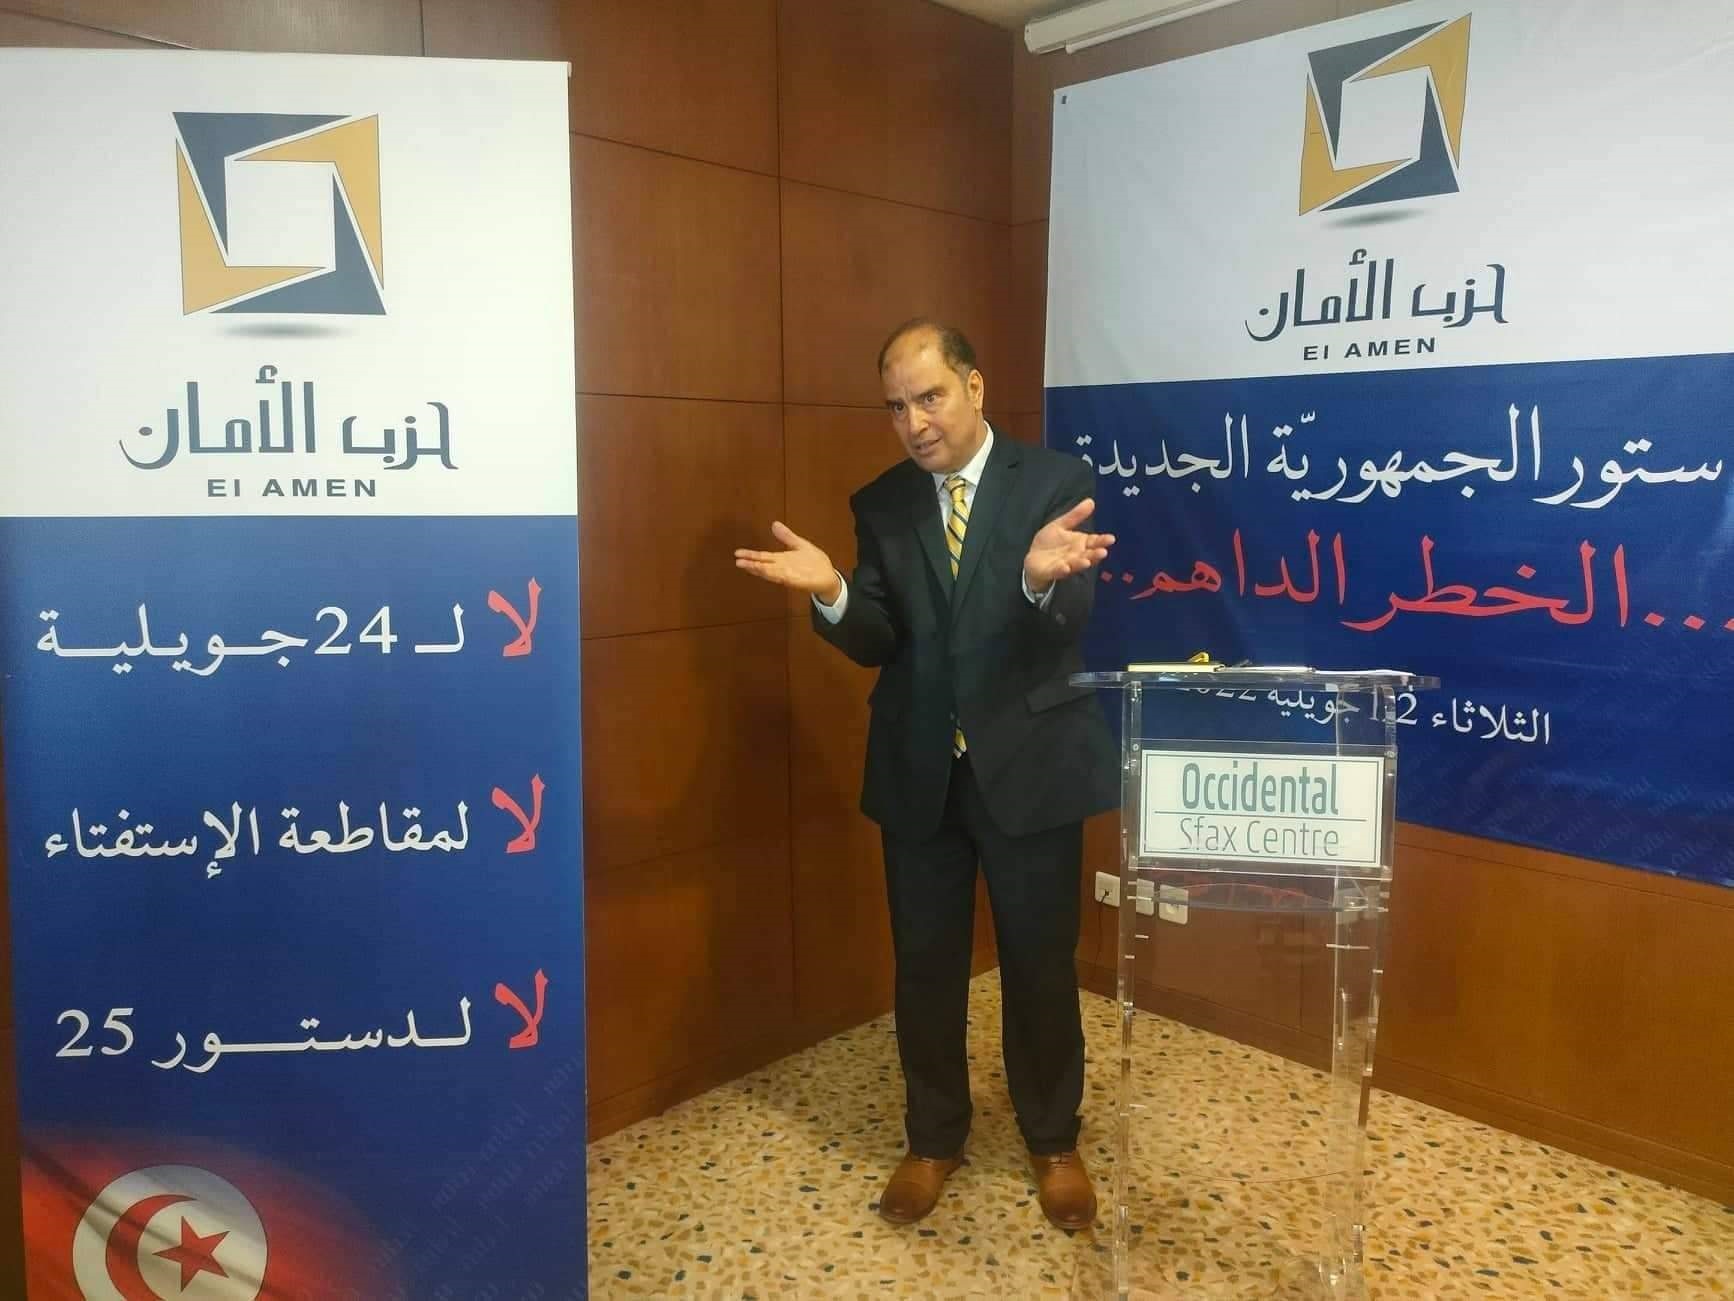 رئيس حزب الأمان لـ "الصباح نيوز": لا لـ 24 جويلية، لا لمقاطعة الإستفتاء، لا لدستور 25